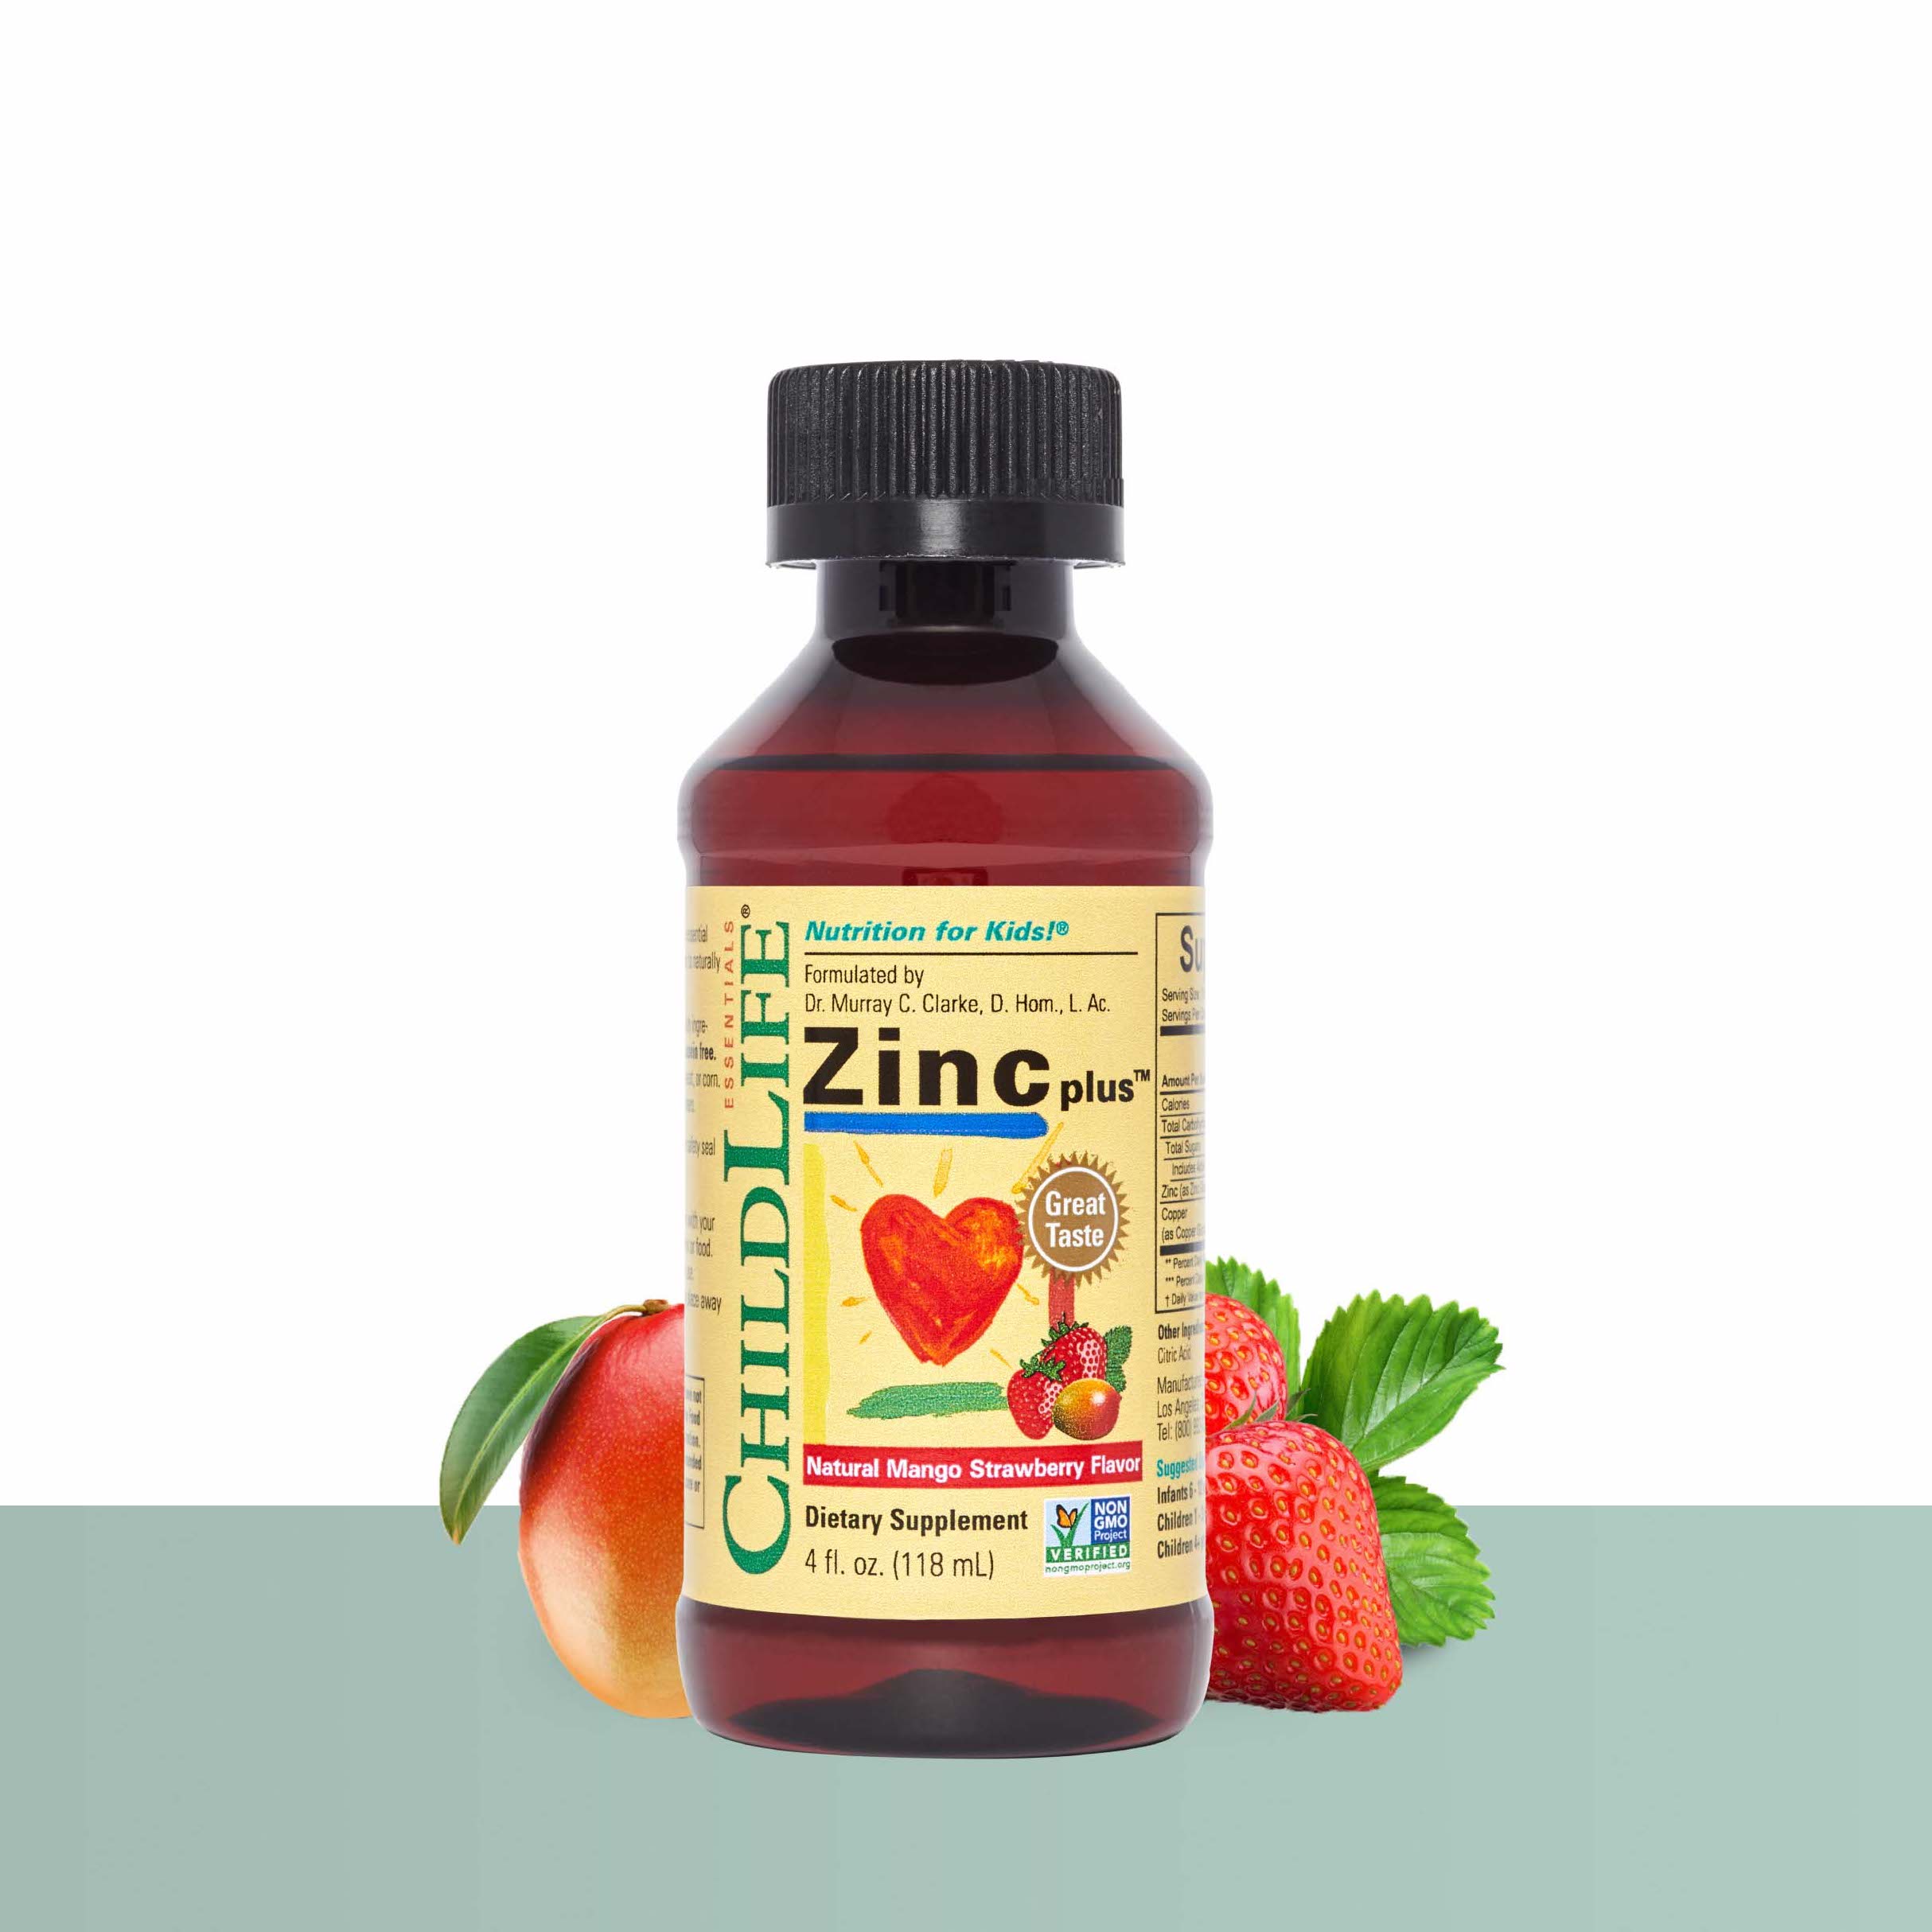 ChildLife Essentials liquid zinc plus